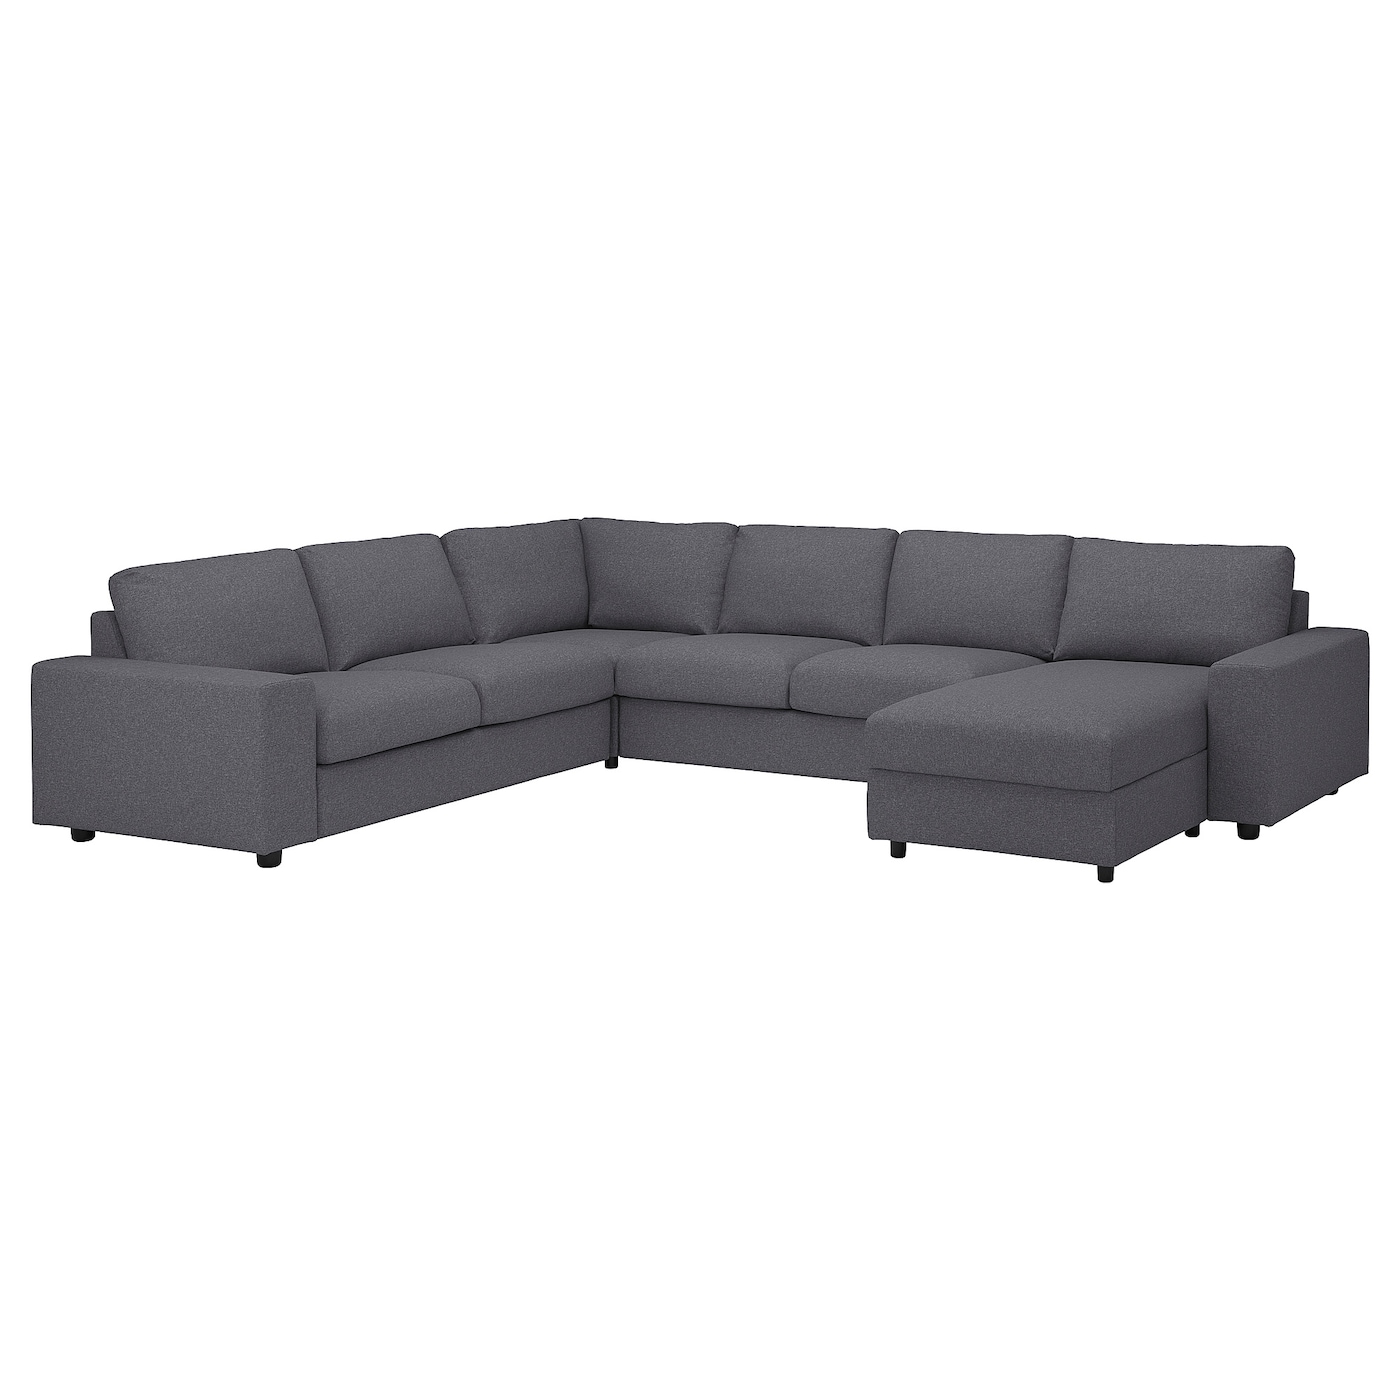 ВИМЛЕ Диван угловой, 5-местный. диван+диван, с широкими подлокотниками/Гуннаред средний серый VIMLE IKEA диван угловой баден next с подлокотниками